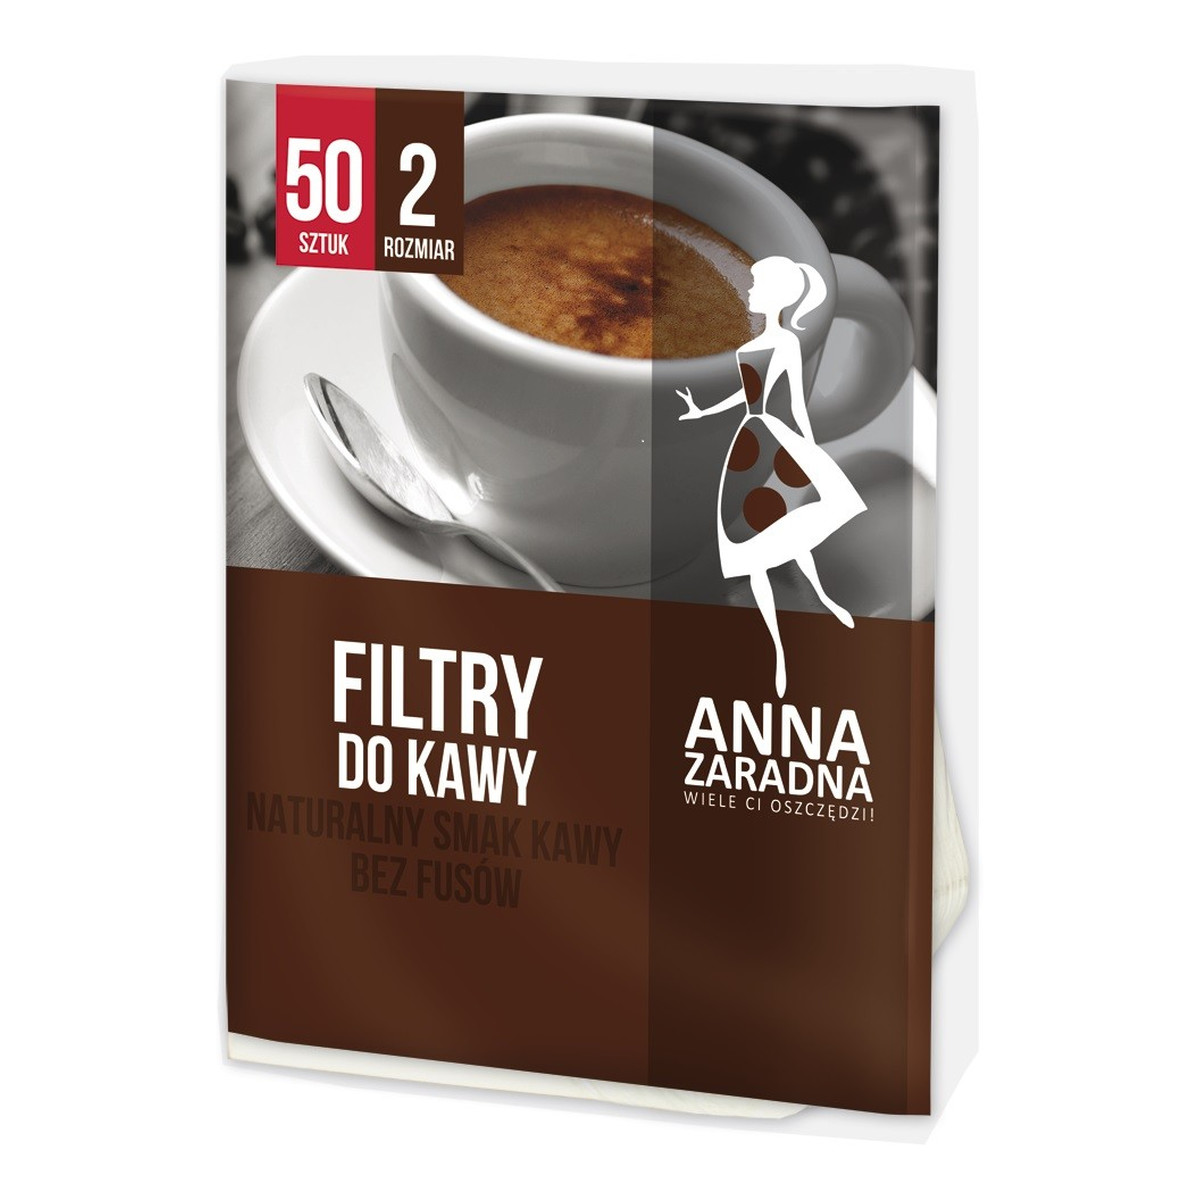 Anna Zaradna Filtry do kawy rozmiar 2 - 50szt.